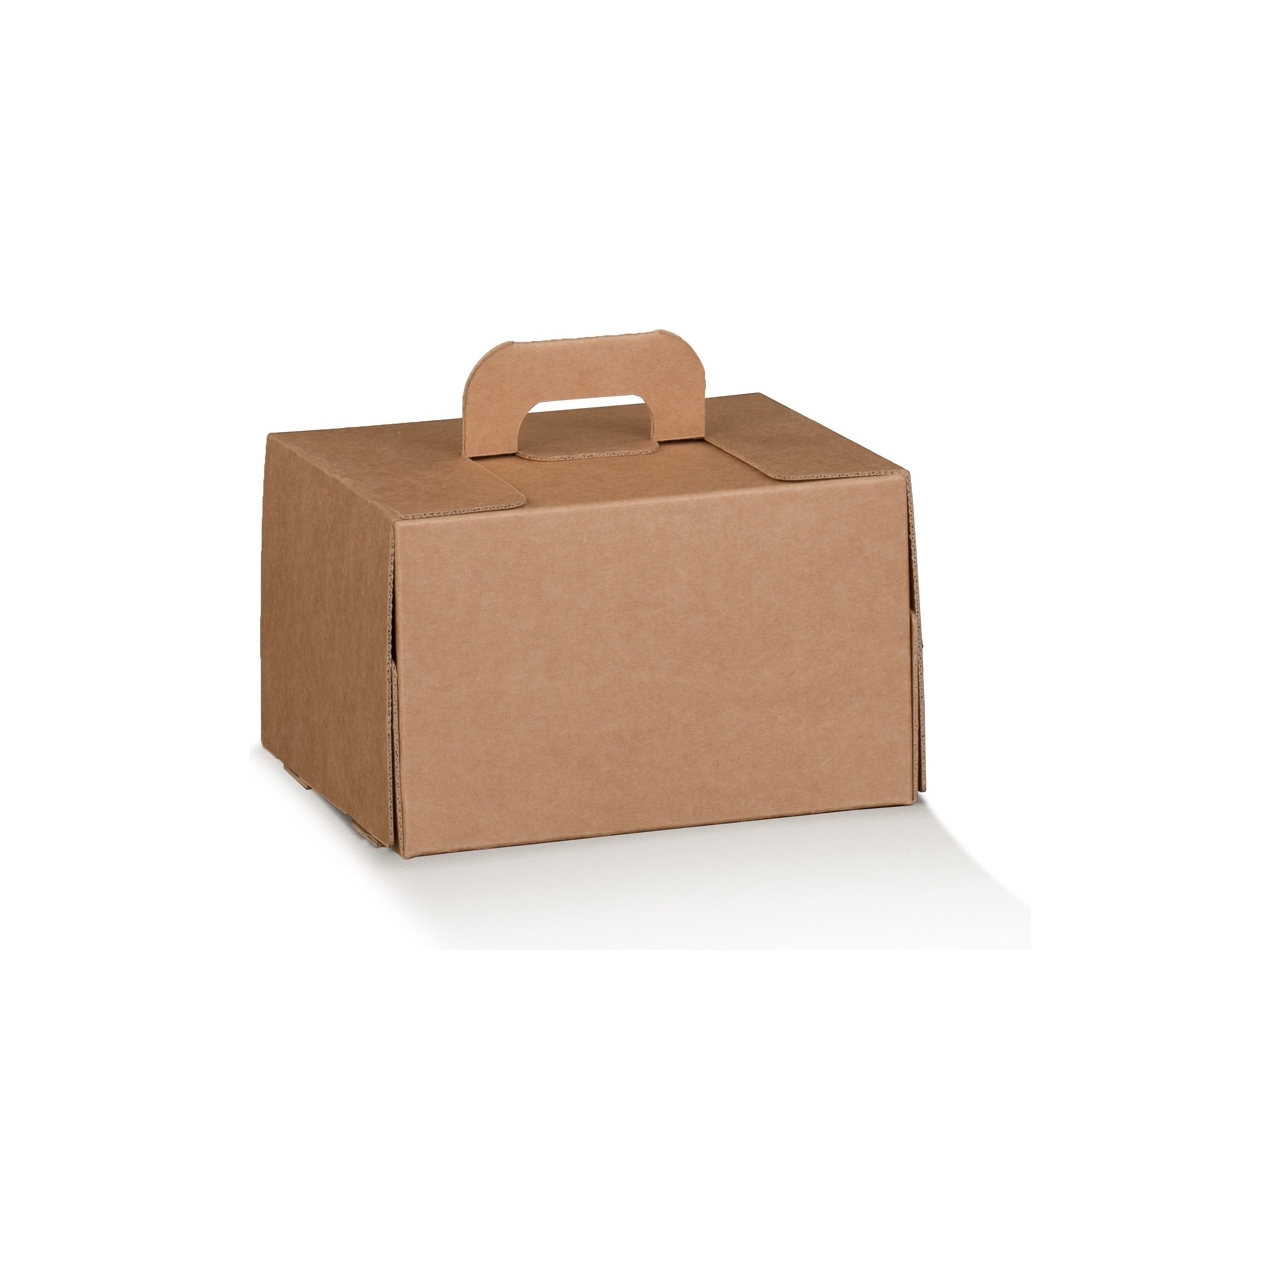 Bauletto in cartoncino avana con manico e aperture ingrosso online b2b per delivery e asporto